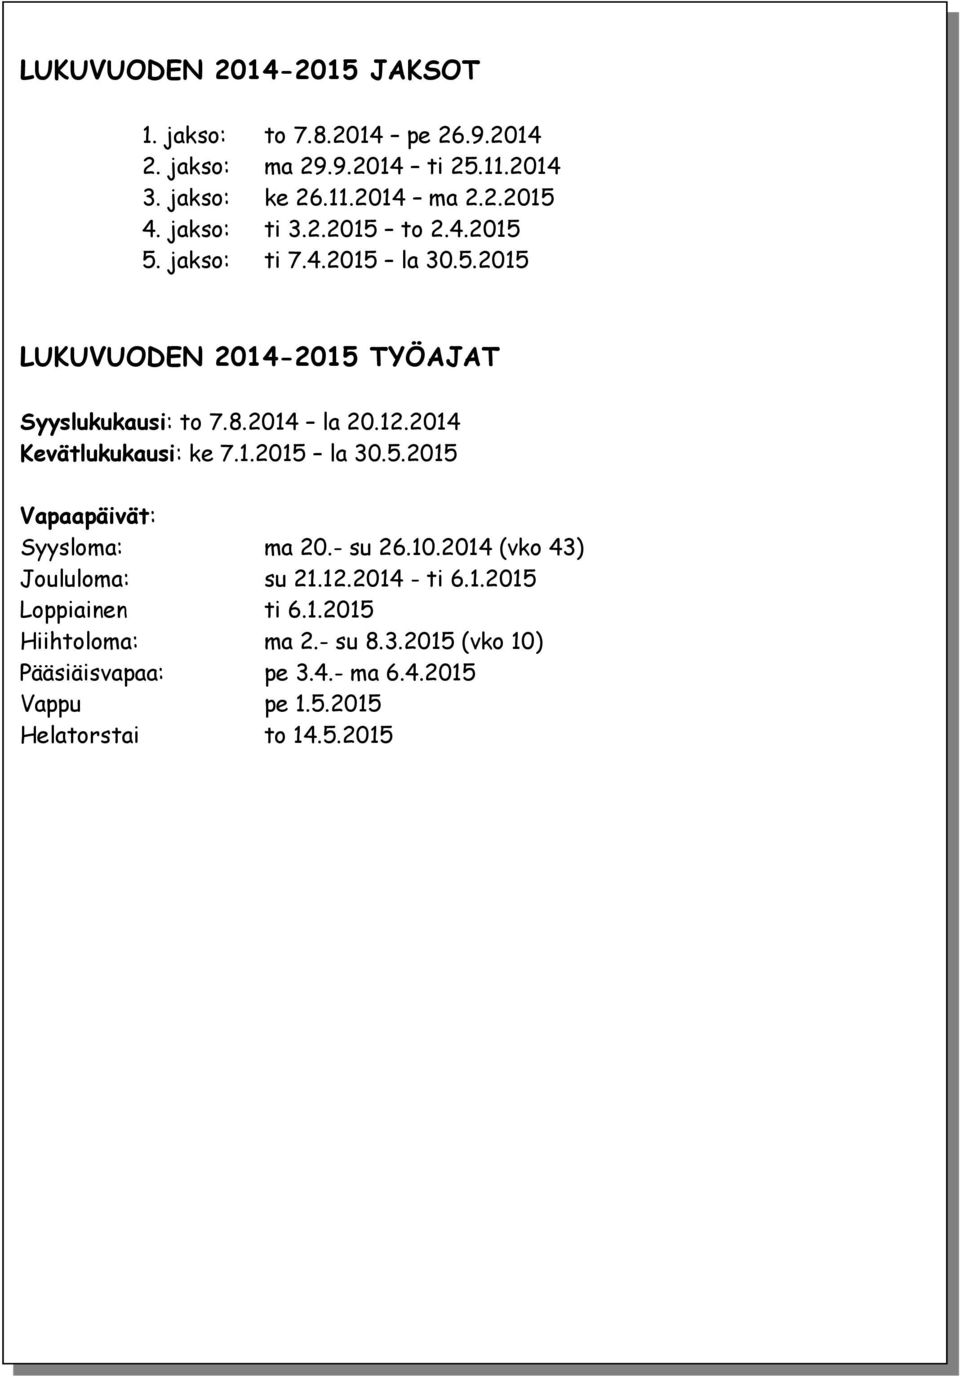 2014 Kevätlukukausi: ke 7.1.2015 la 30.5.2015 Vapaapäivät: Syysloma: ma 20.- su 26.10.2014 (vko 43) Joululoma: su 21.12.2014 - ti 6.1.2015 Loppiainen ti 6.